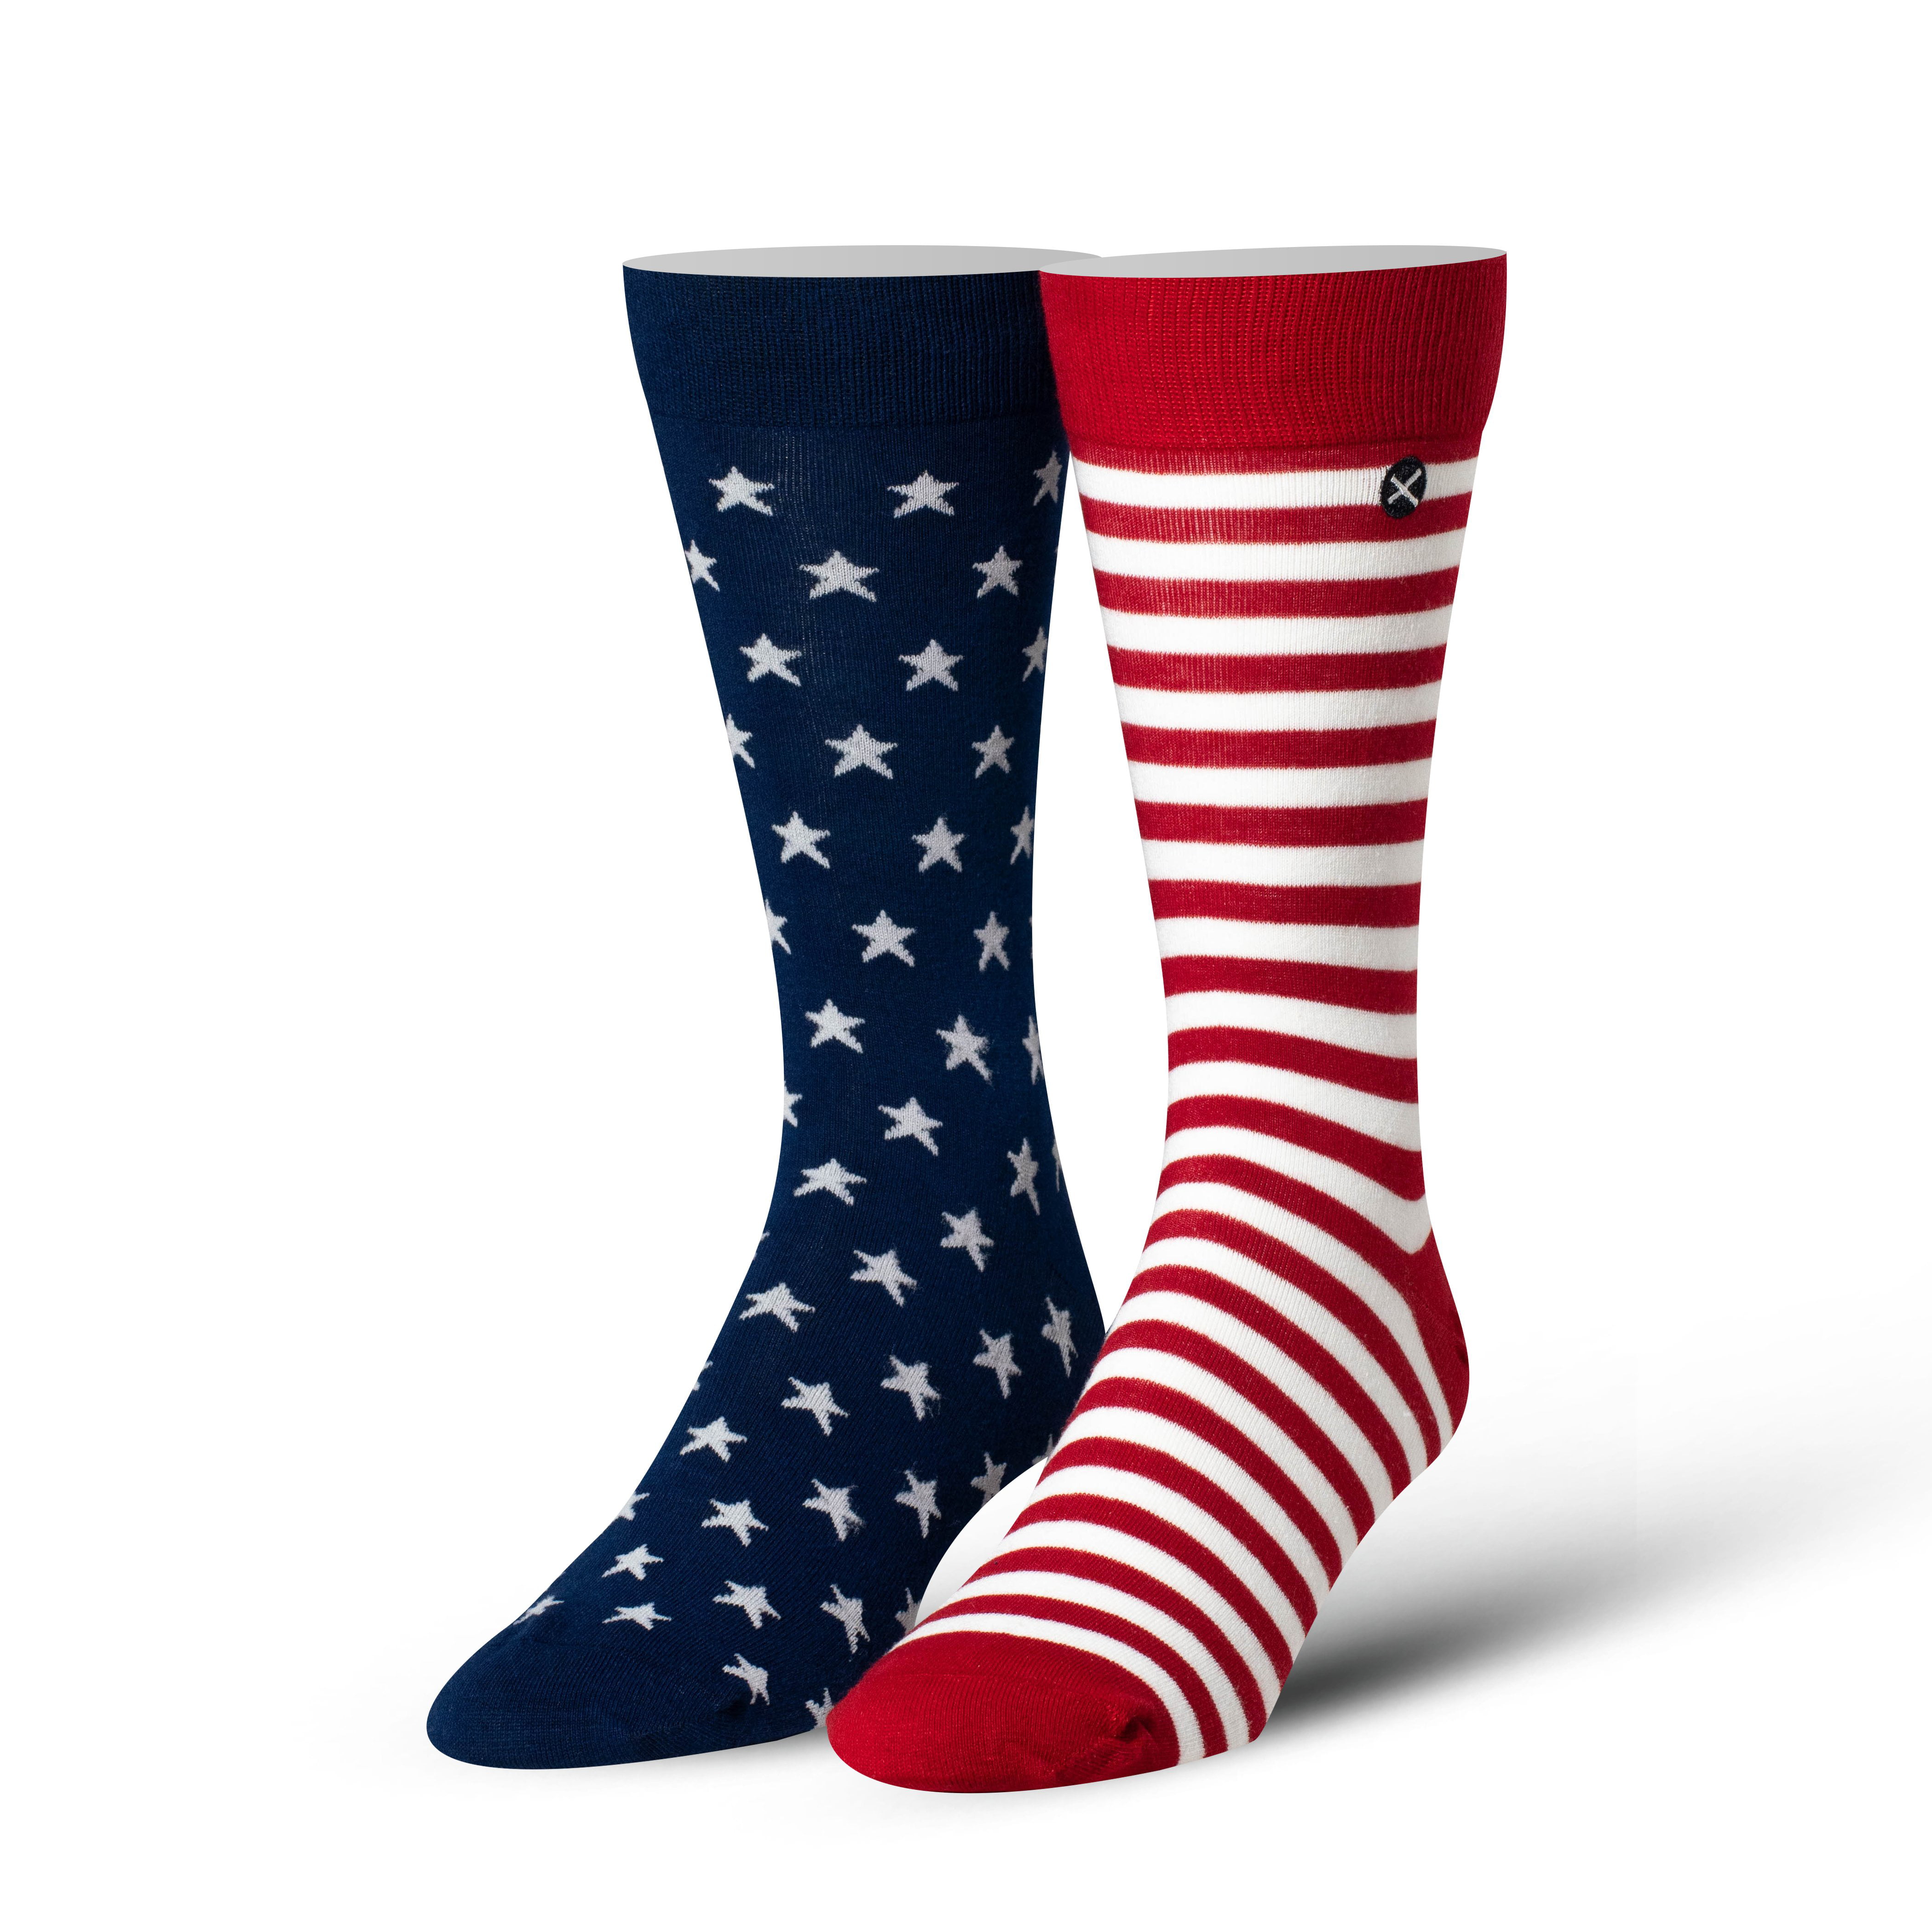 Odd Sox - Odd Sox, Unisex, American Flag, Stars & Stripes, Dress Socks ...